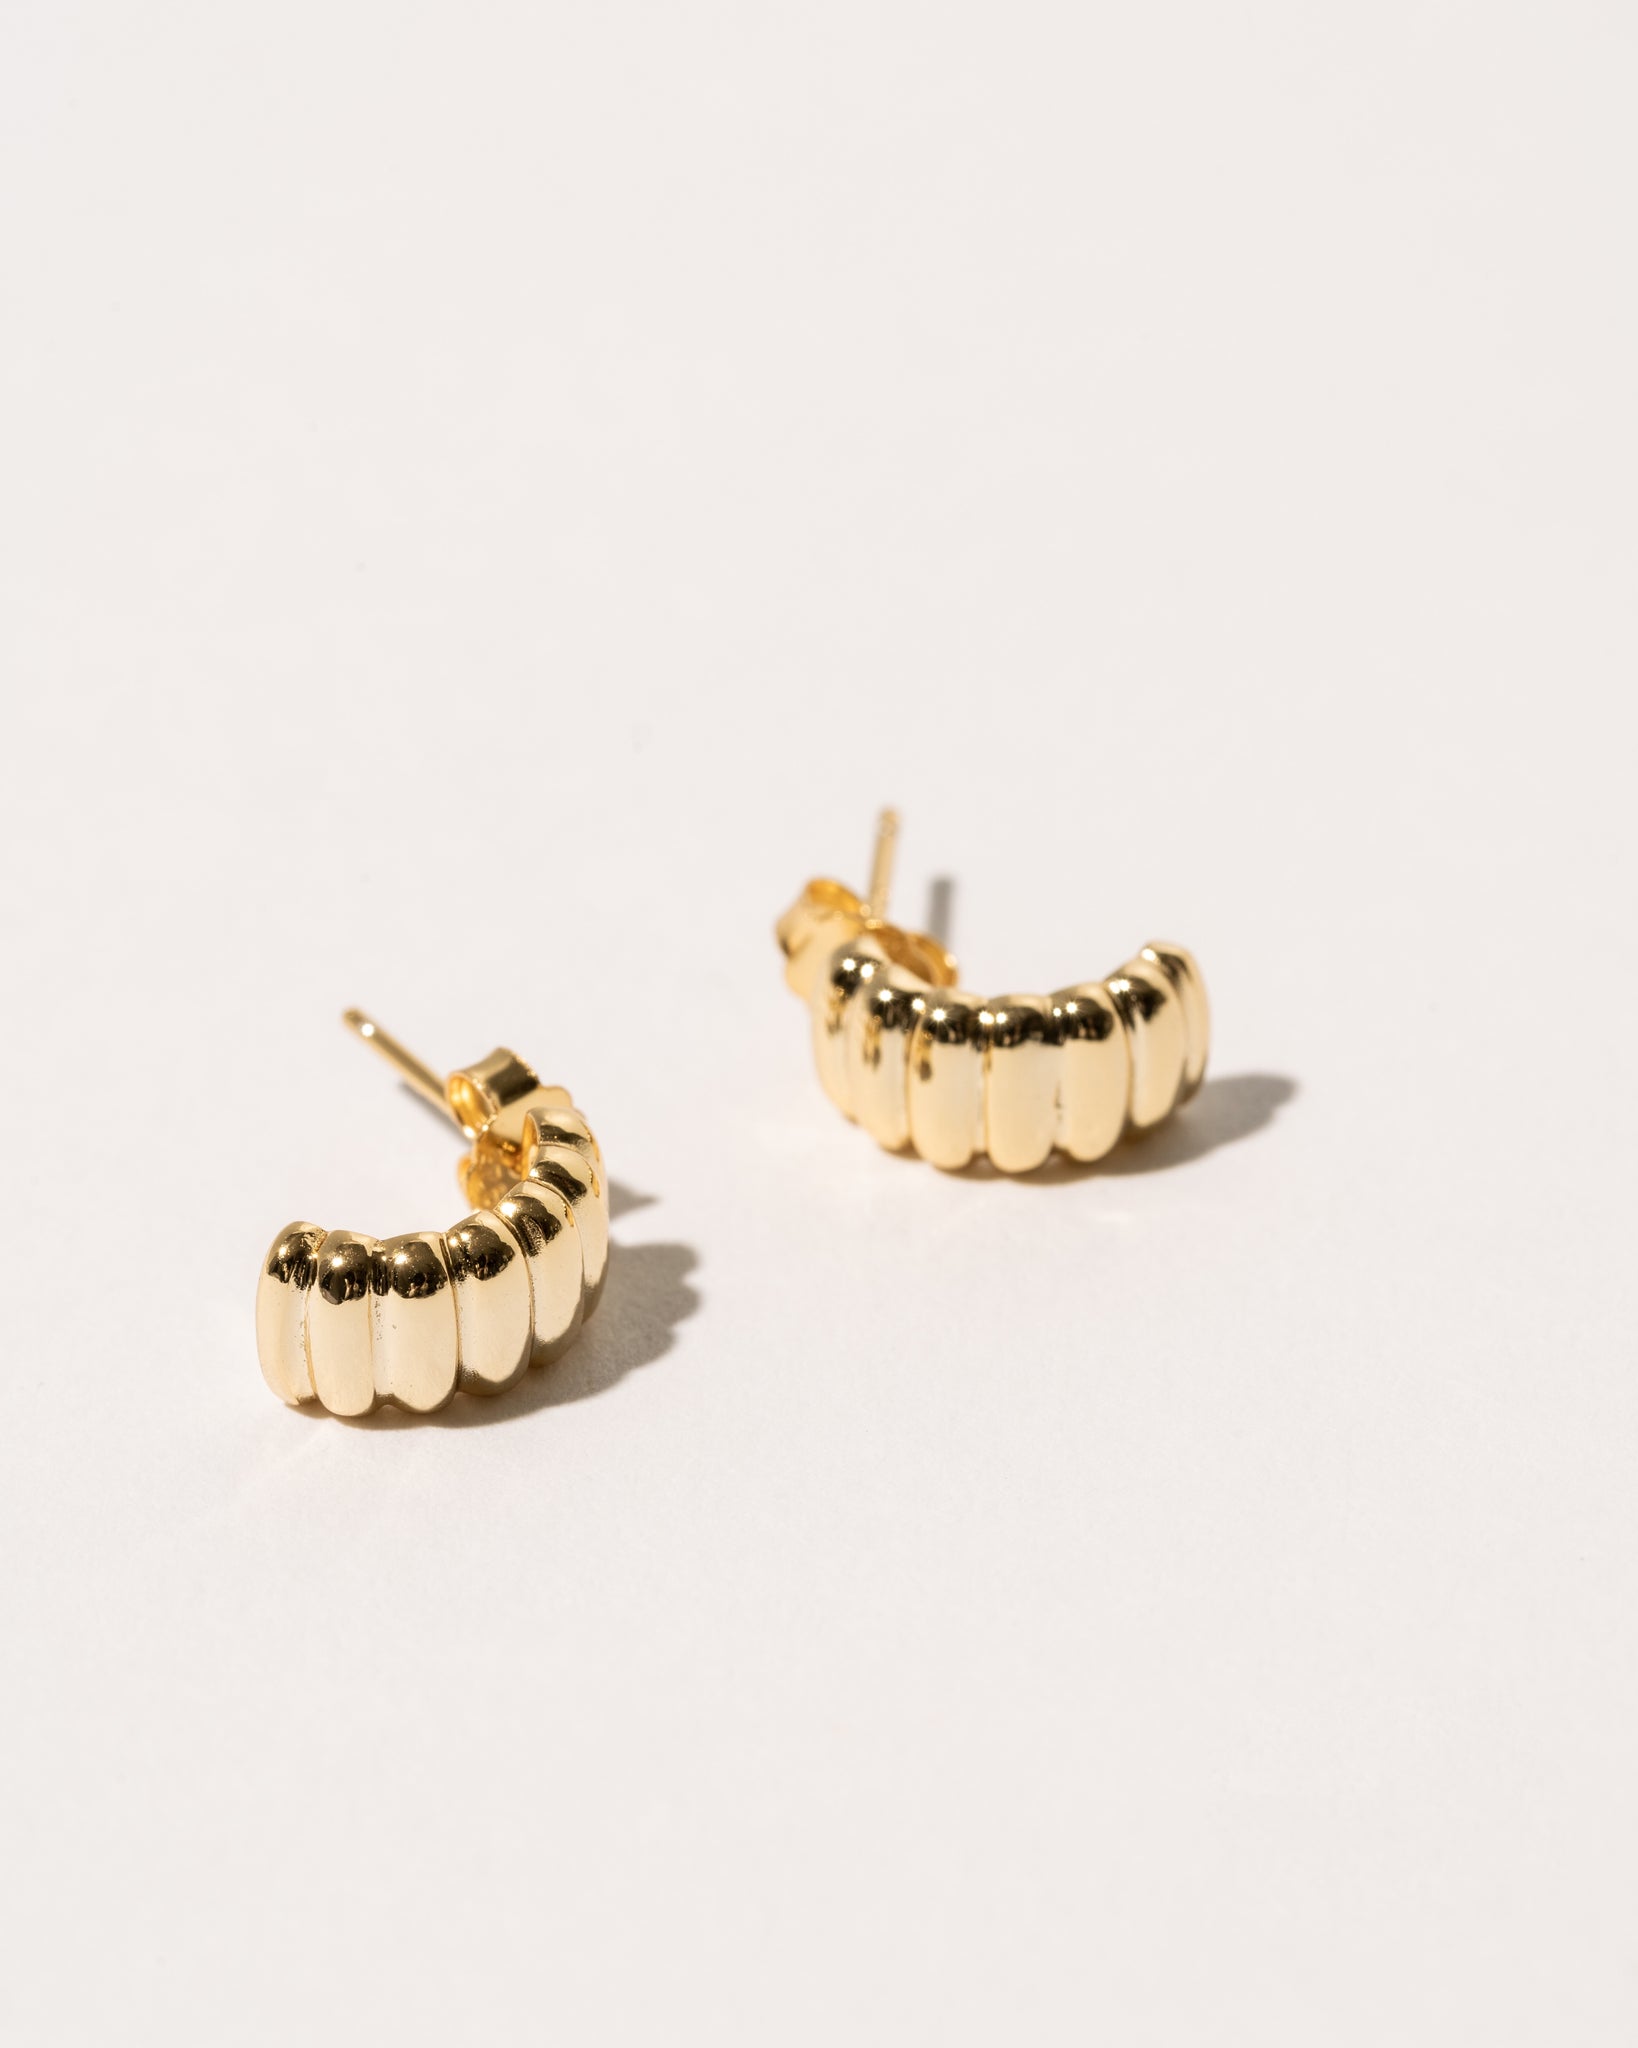 By JPaquin - Minimalist Earrings